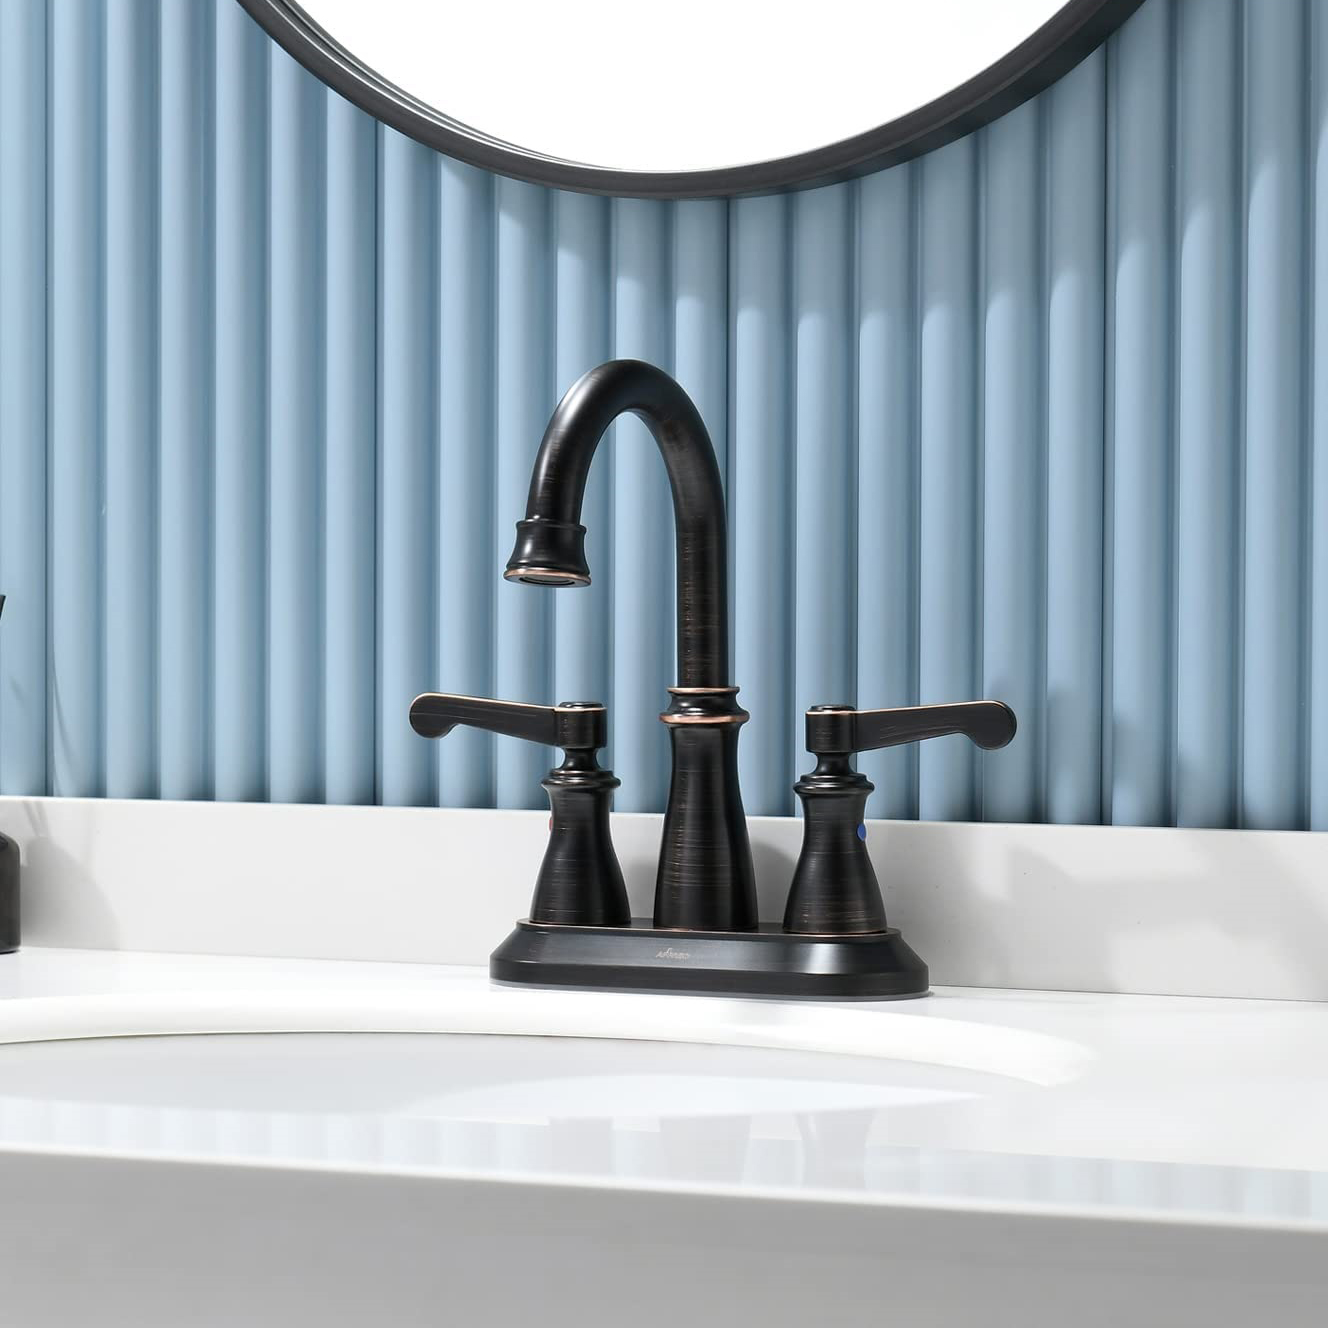 Wählen Sie zwischen mattschwarzen und verchromten Badarmaturen: Ein stilvoller Leitfaden zur Aufwertung Ihrer Duschraumdekoration